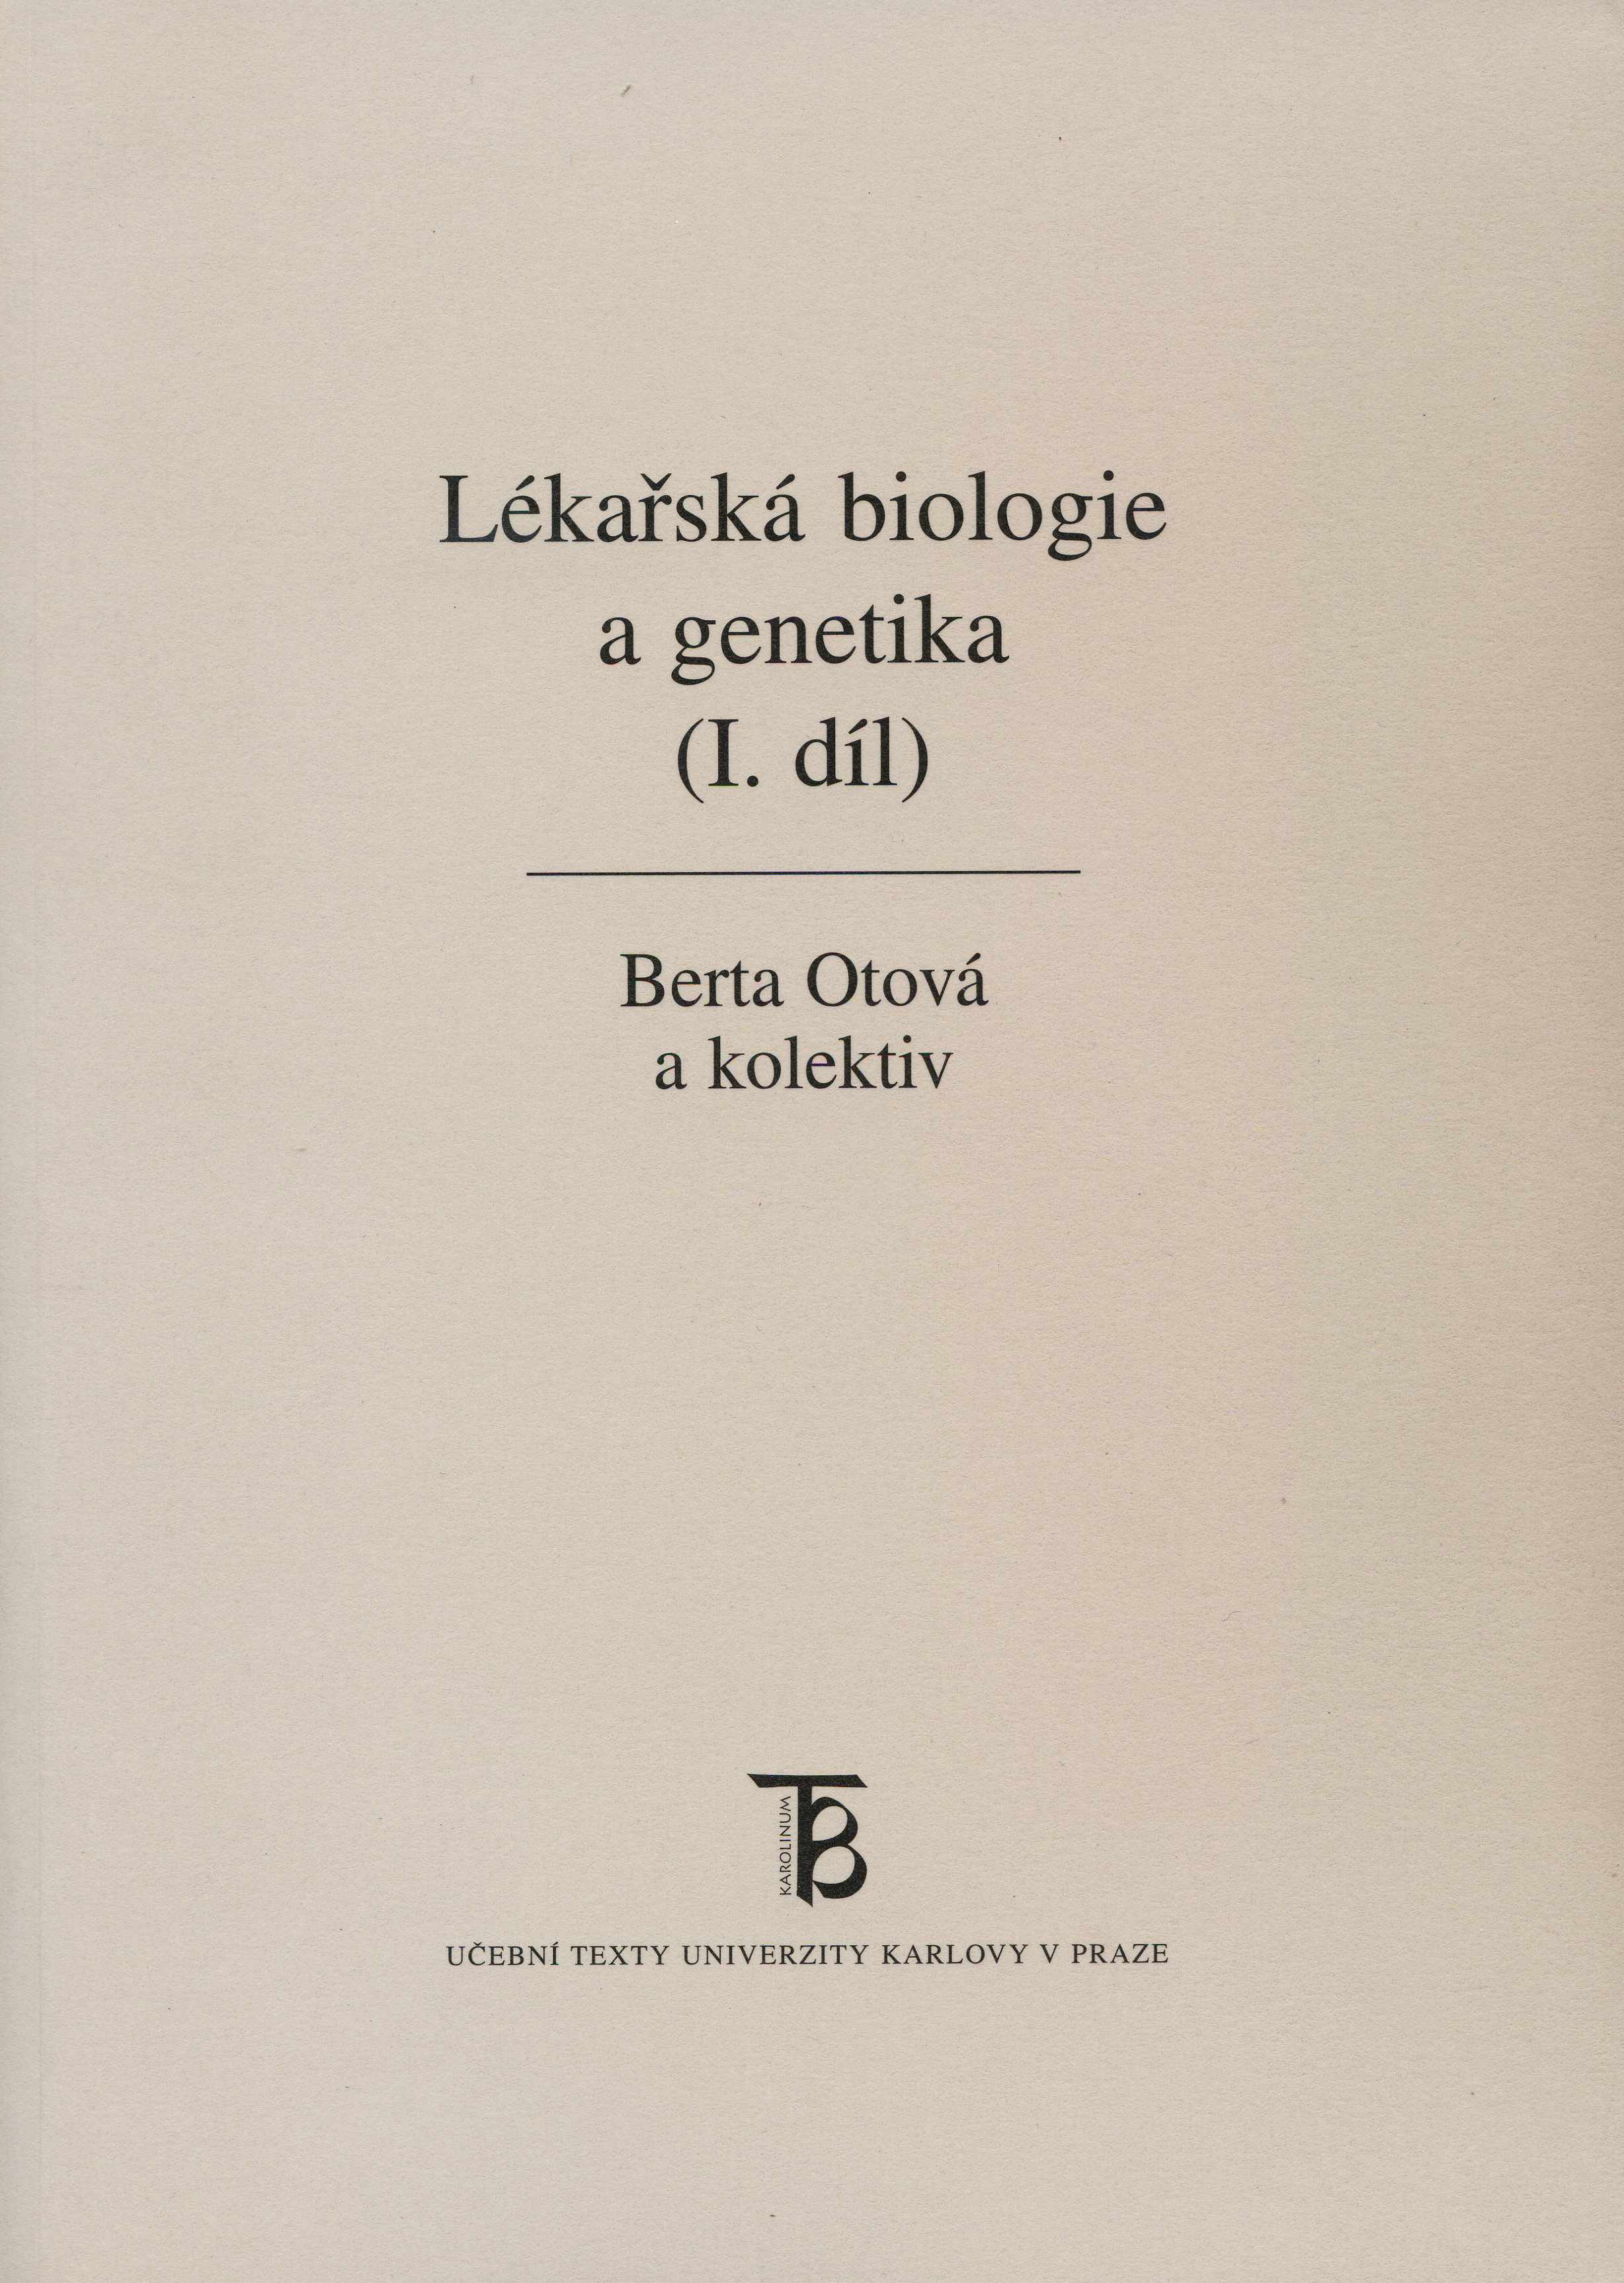 Lékařská biologie a genetika (I. díl)